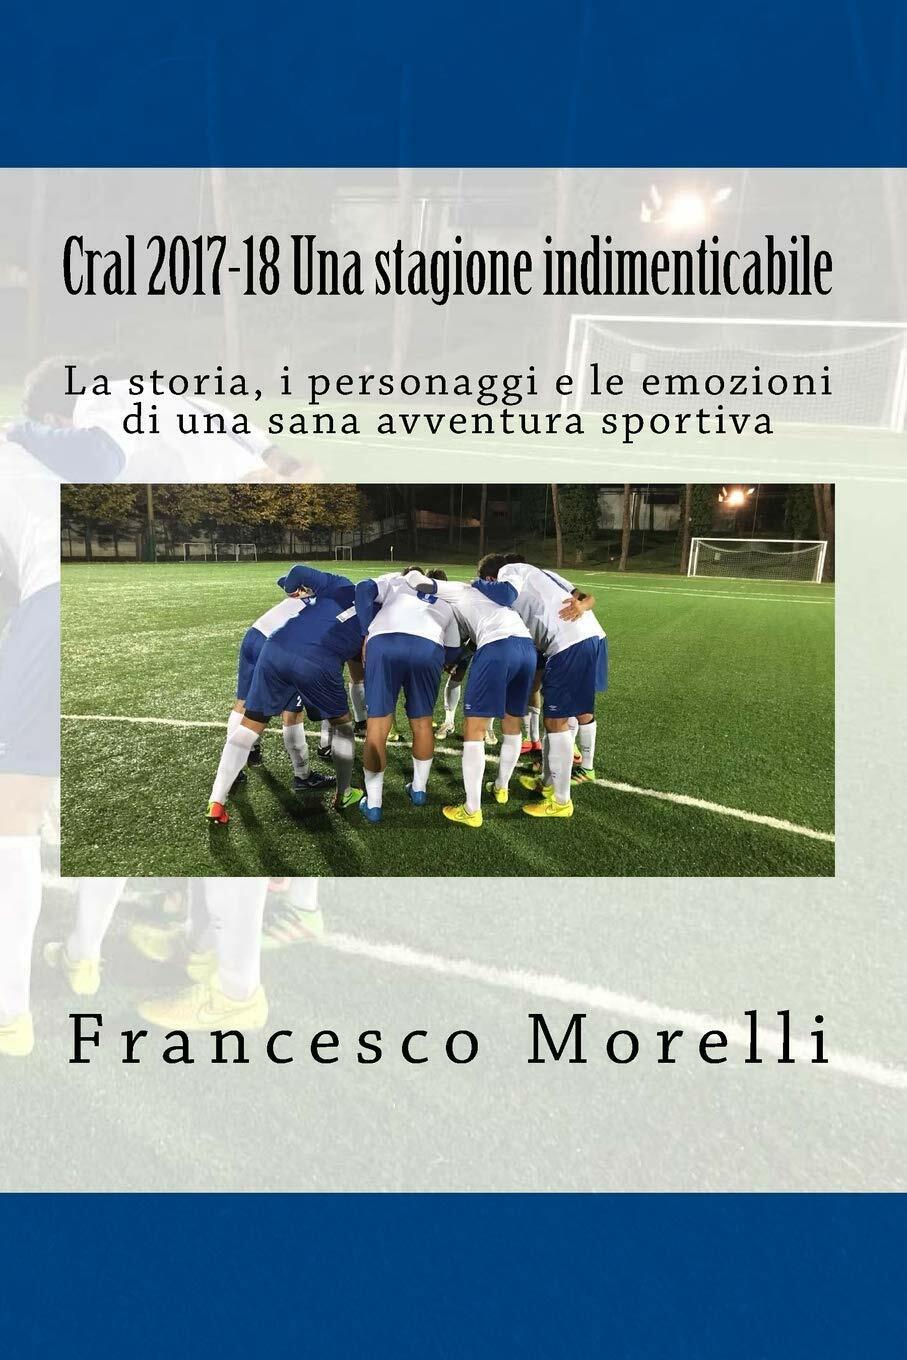 Cral 2017-18 Una Stagione Indimenticabile - Francesco Morelli - 2018